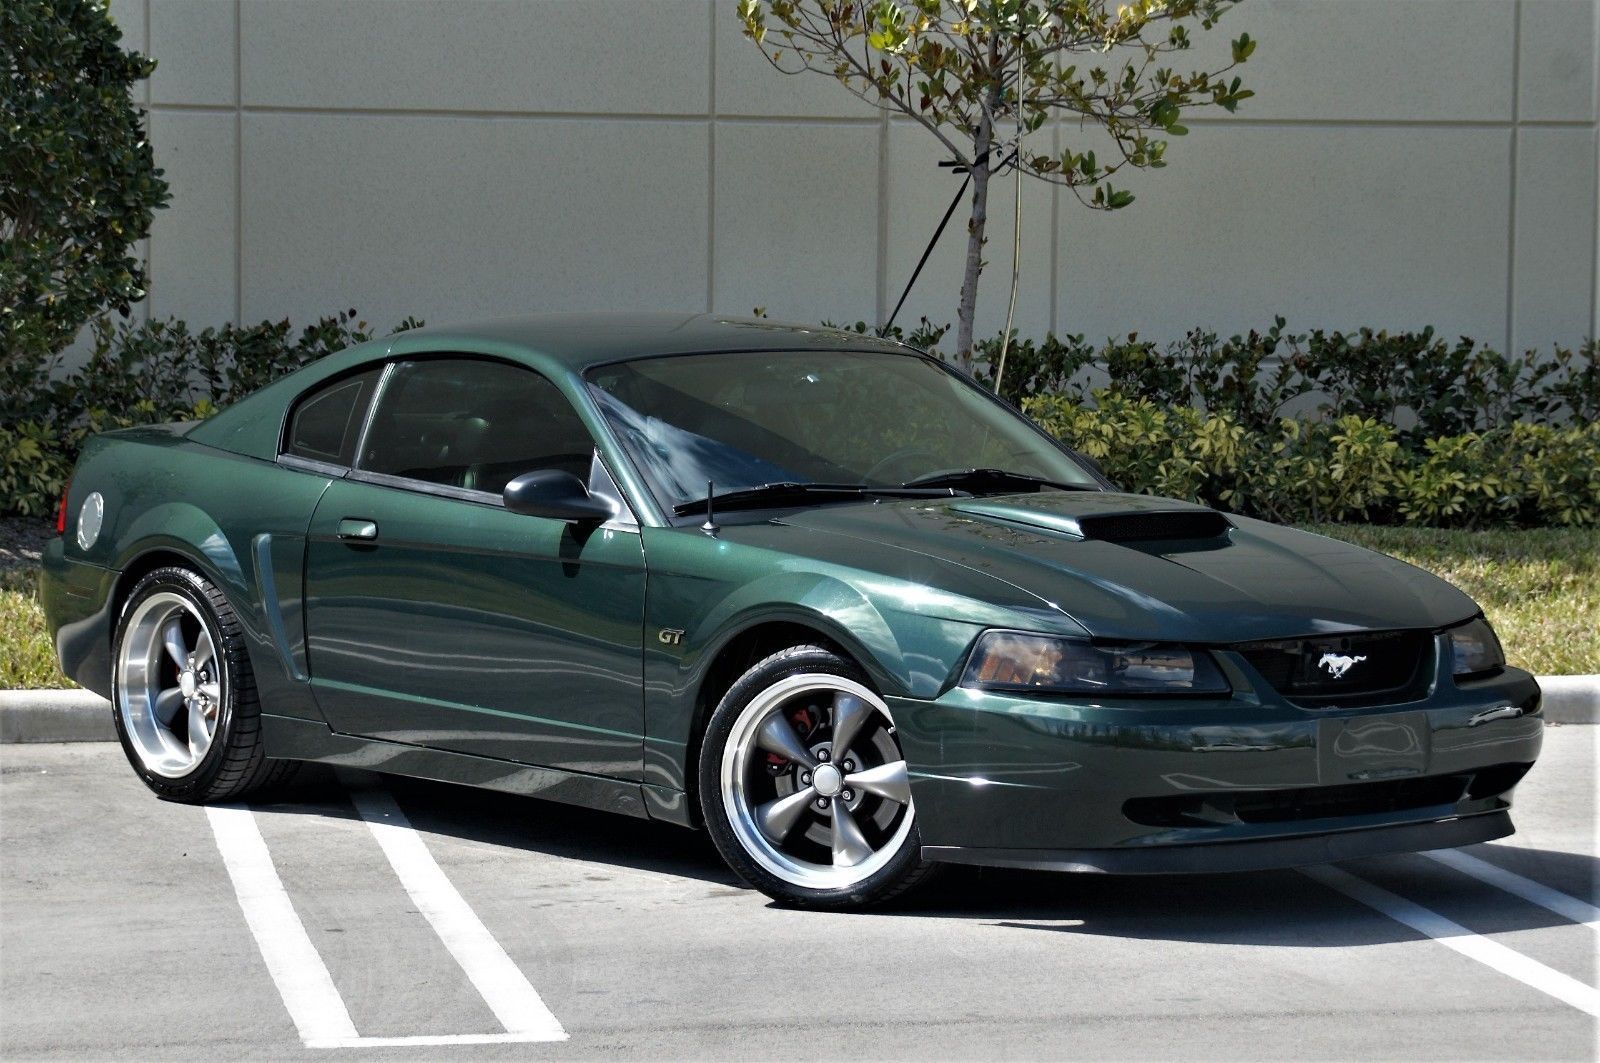 2001 Bullitt Mustang up for sale